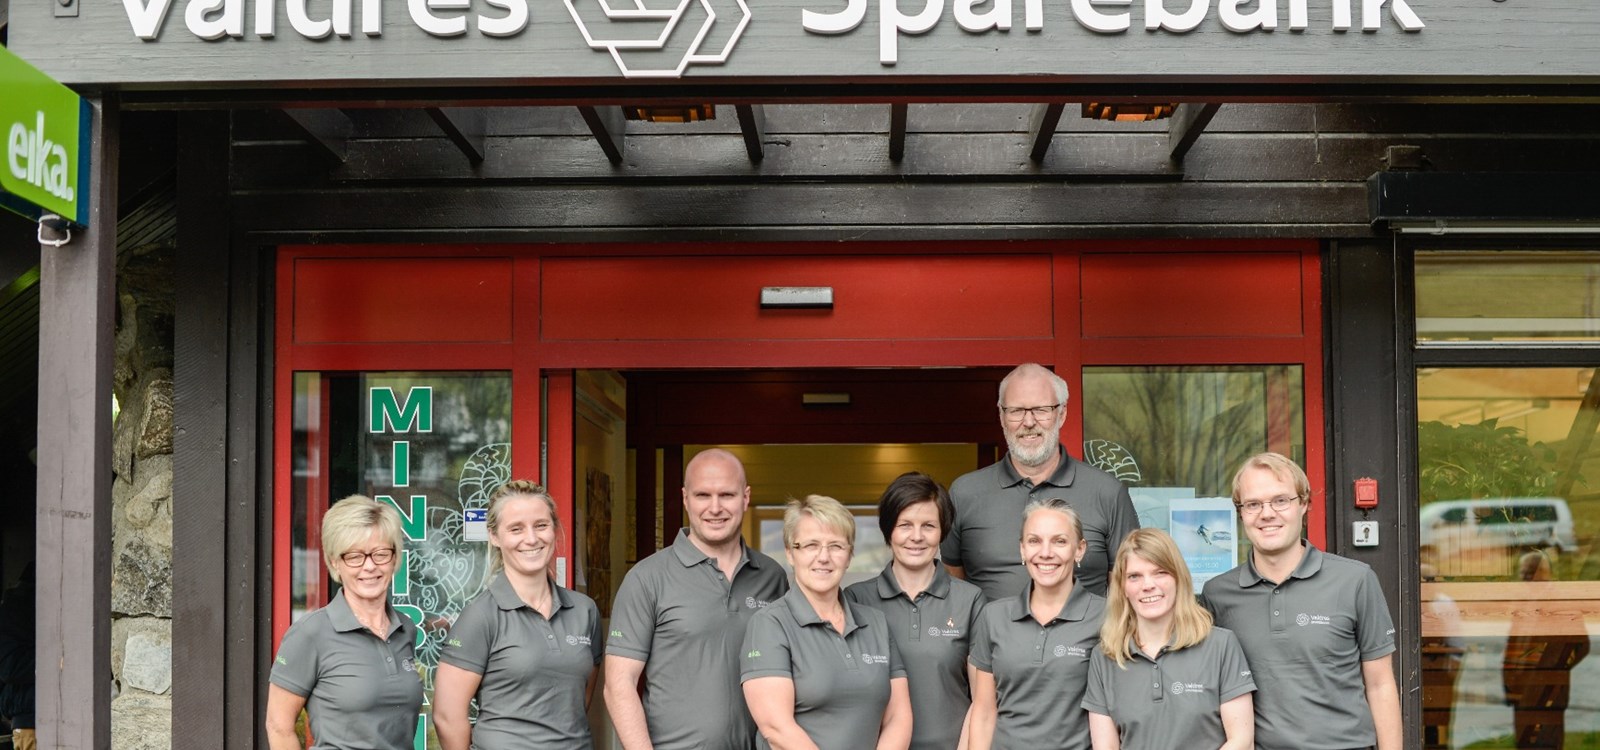 Denne gjengen åpnet dørene til Valdres sparebank sin filial i Vang 1. november.